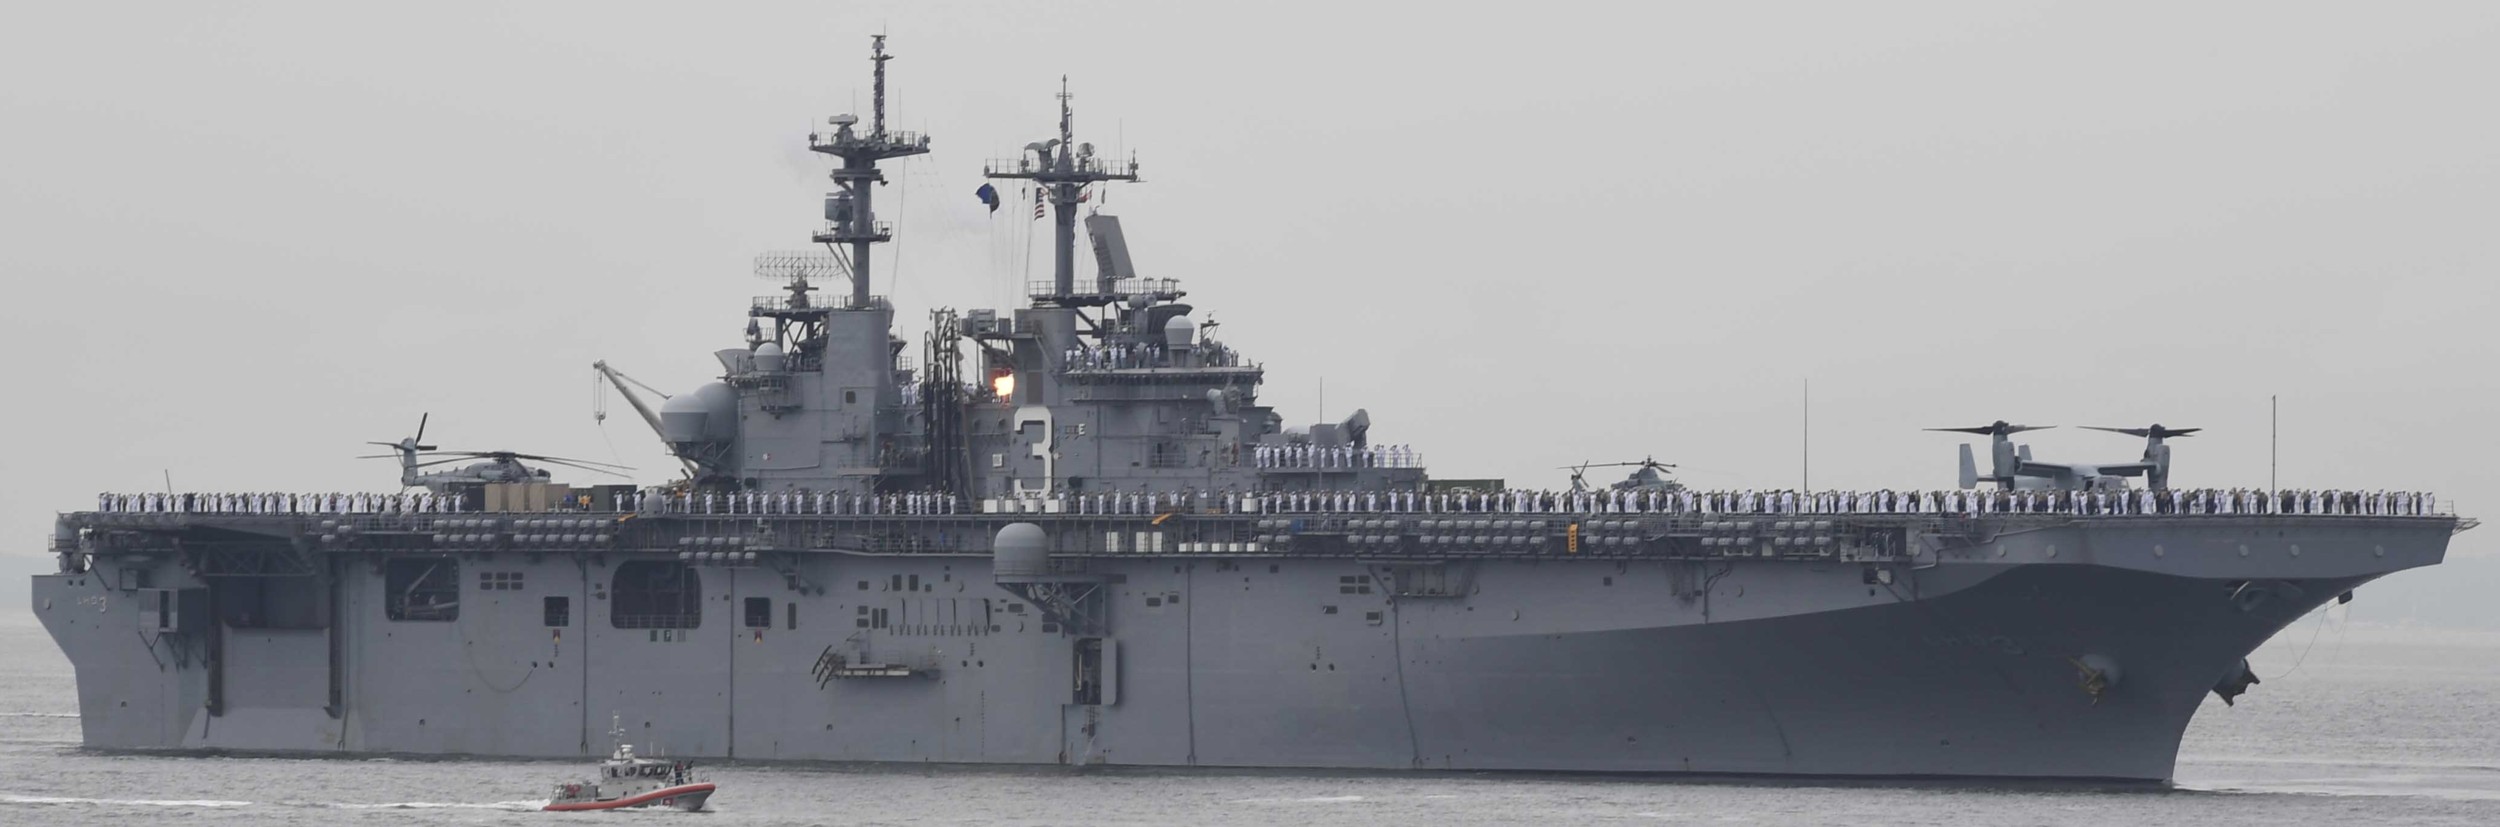 lhd-3 uss kearsarge wasp class amphibious assault ship landing dock us navy 171